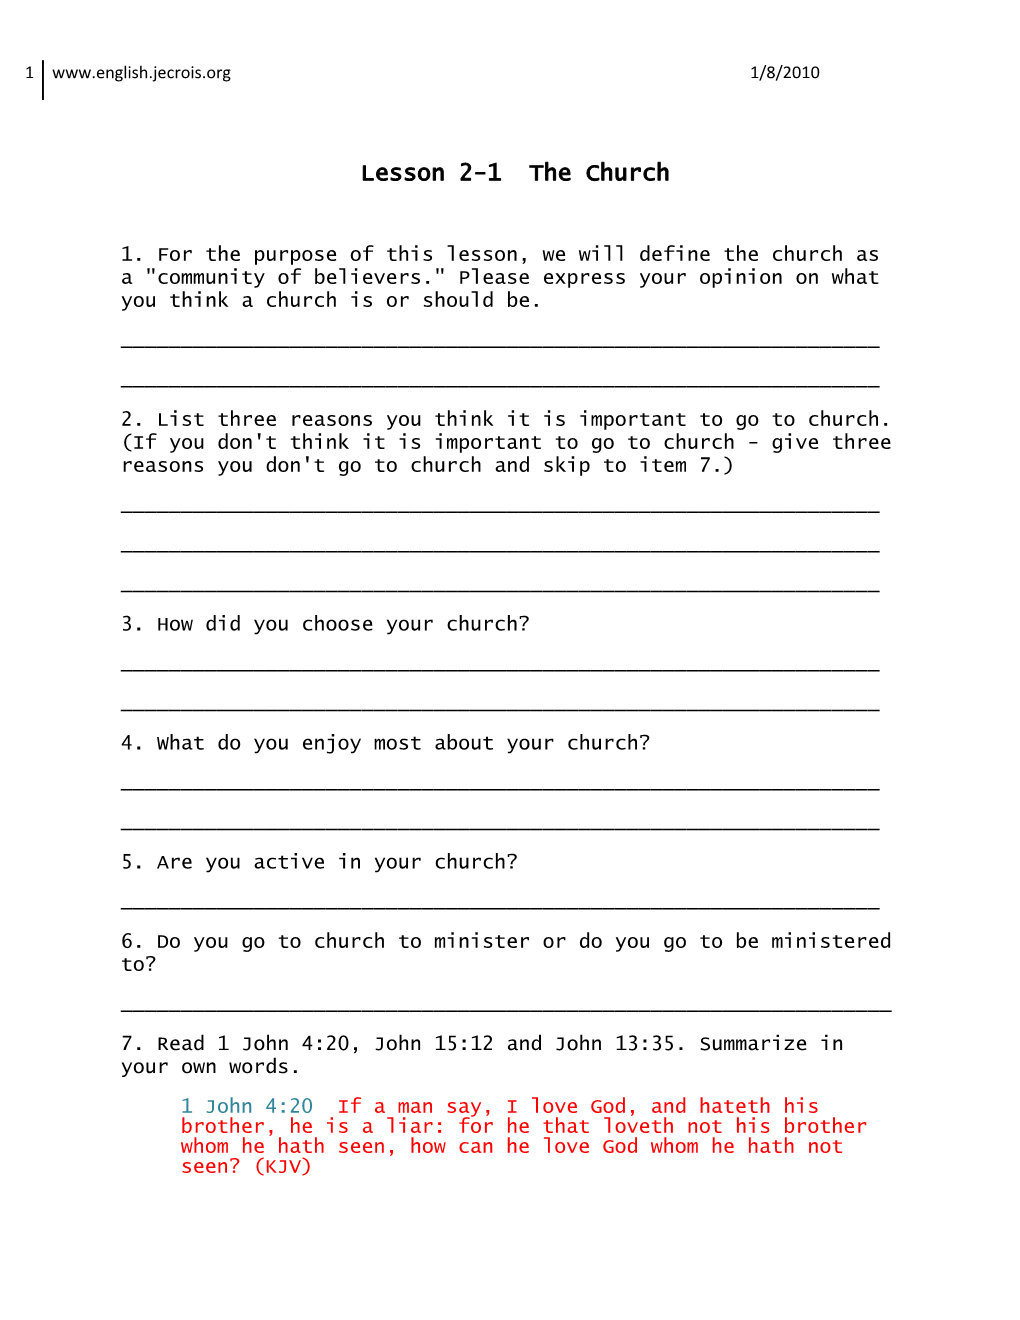 Lesson 2-1 the Church